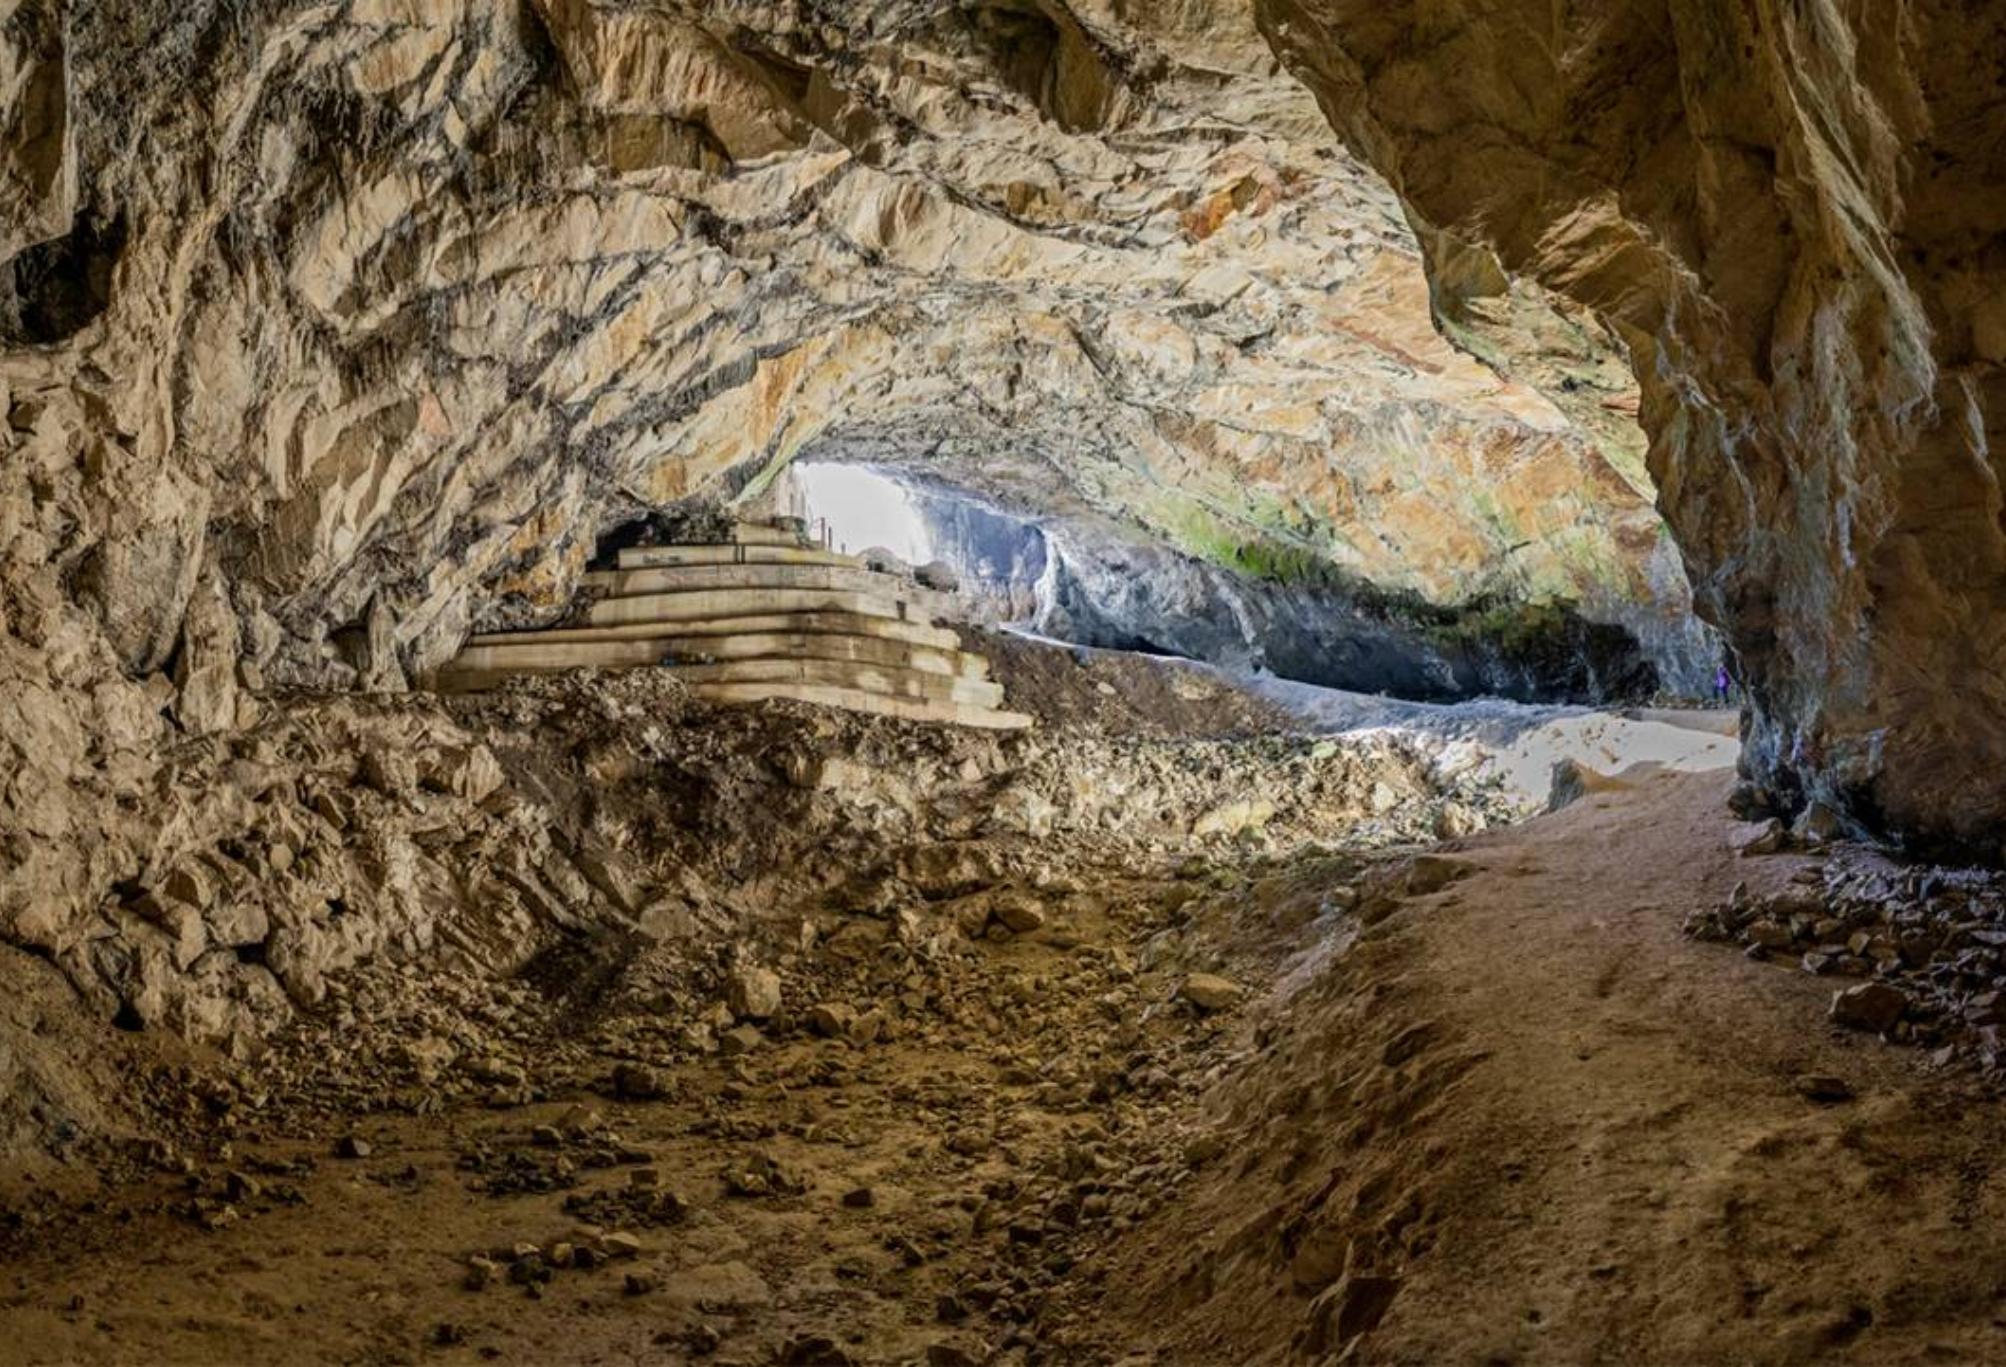 Σπήλαιο των Αμώμων ή η σπηλιά του Νταβέλη: Οι θρύλοι και η αληθινή ιστορία για τον λήσταρχο – Που σταματάει ο μύθος και που αρχίζει η πραγματικότητα